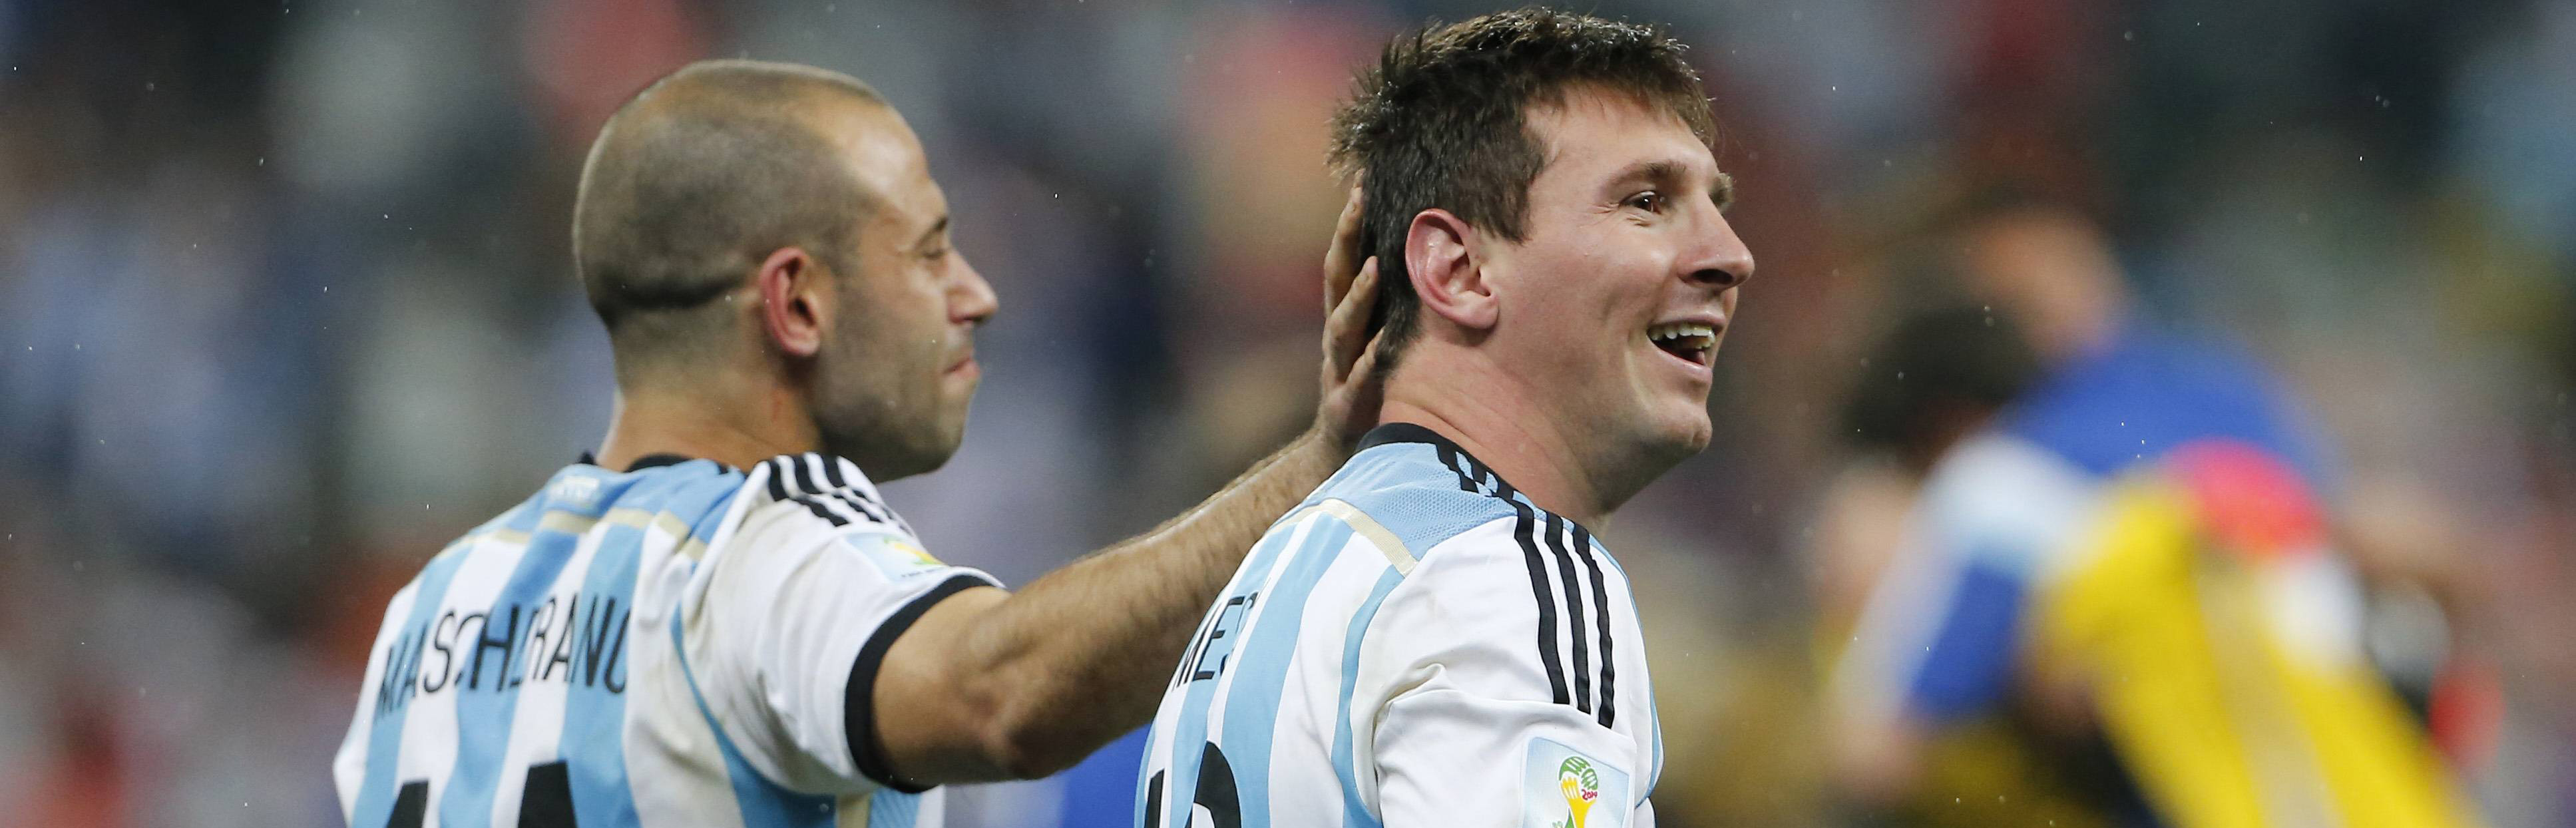 Lionel Messi (r) viert feest met ploeggenoot Javier Mascherano na het bereiken van de WK-finale.